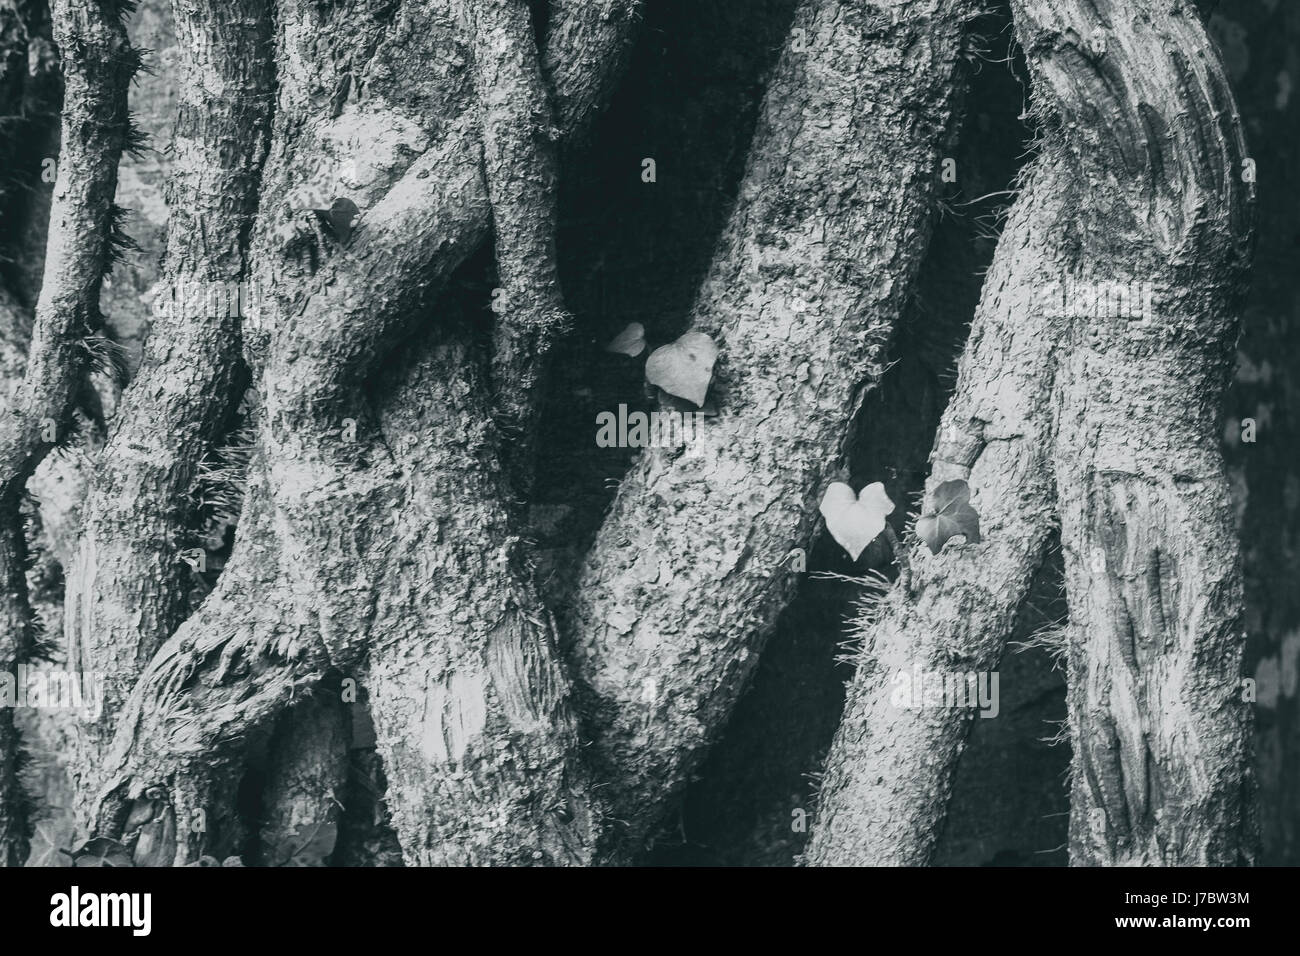 eine monochrome Aufnahme der Rinde eines knorrigen Baumes Charakter zeigen. Stockfoto